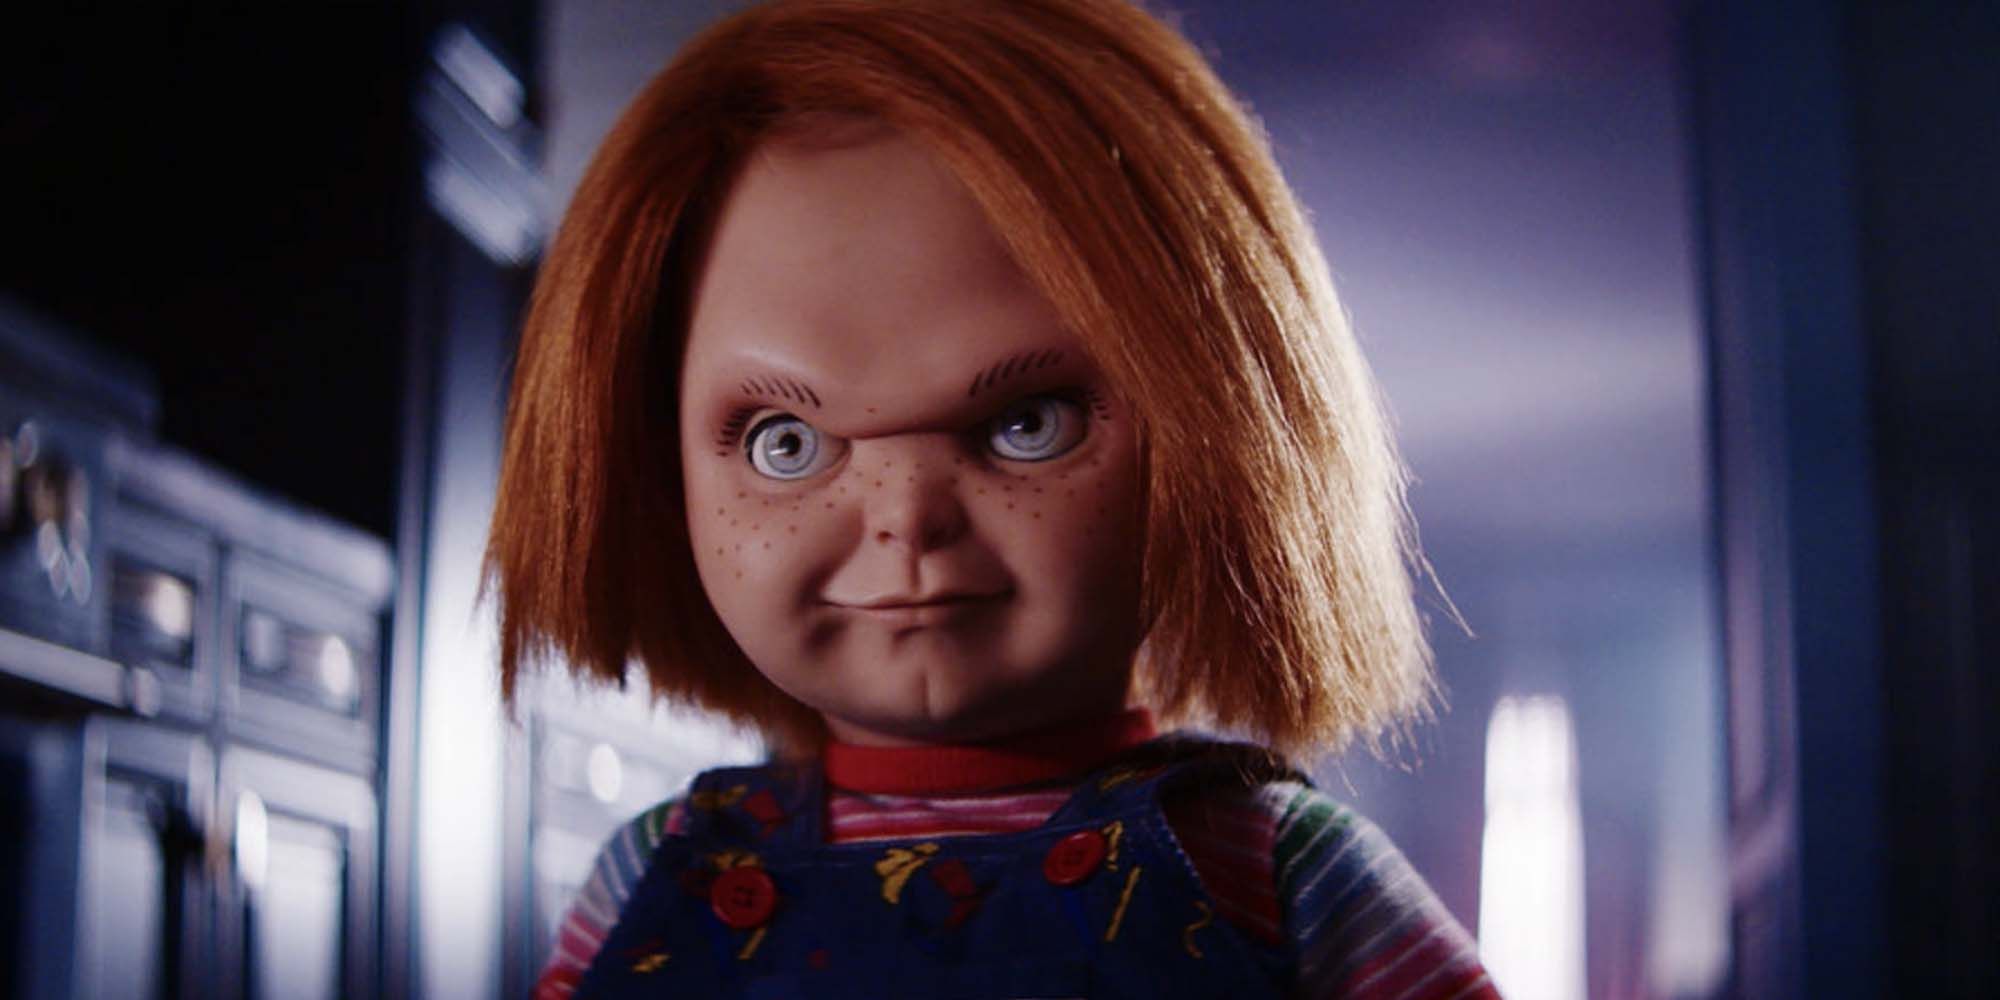 Fecha de lanzamiento de la temporada 2 de Chucky prevista para este otoño